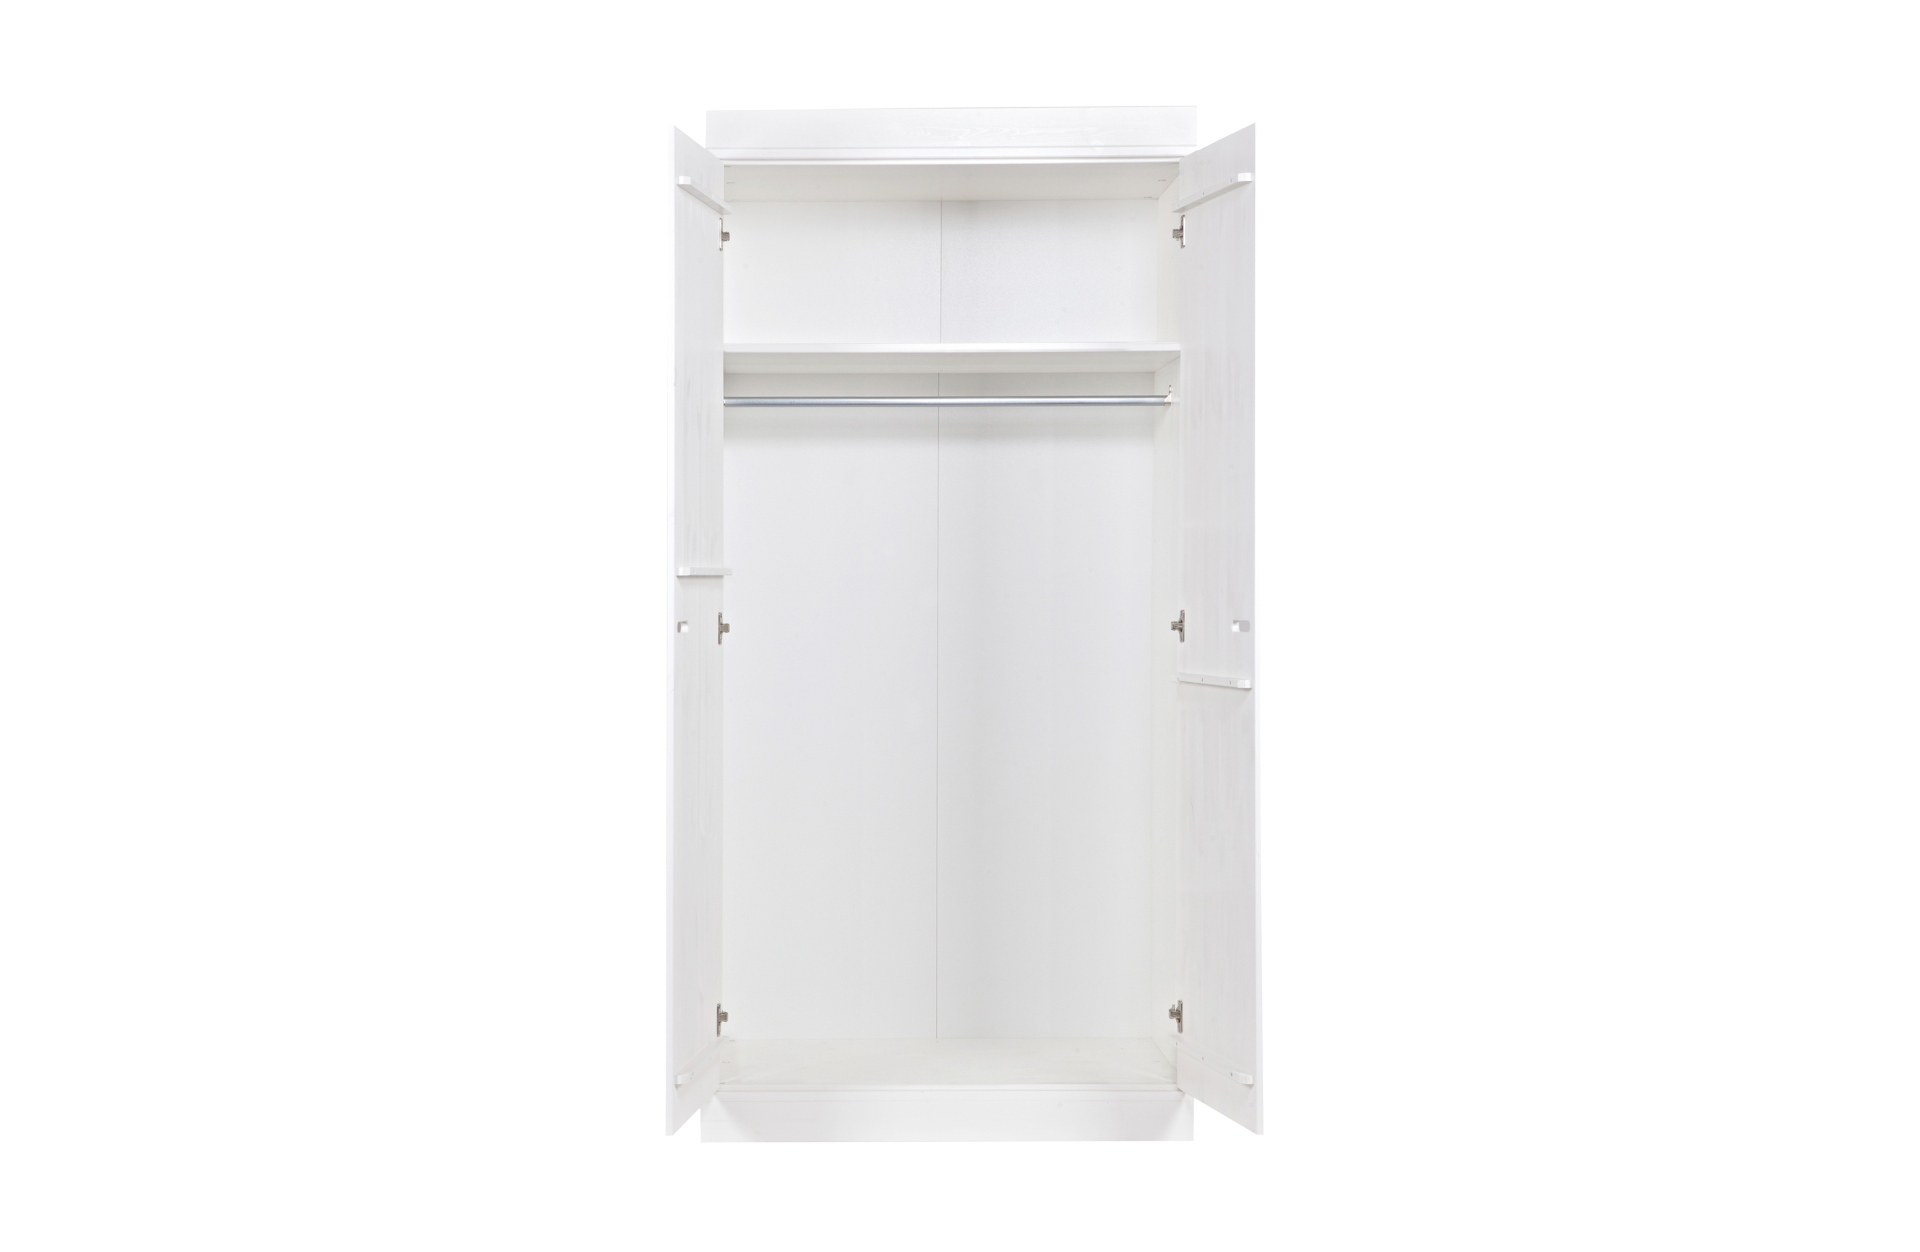 Der schlichte Kleiderschrank Connect wurde aus Kiefernholz gefertigt. Hinter den zwei Türen befindet sich ausreichend Stauraum für diverse Kleidungsstücke. Der Schrank hat einen weißen Farbton.